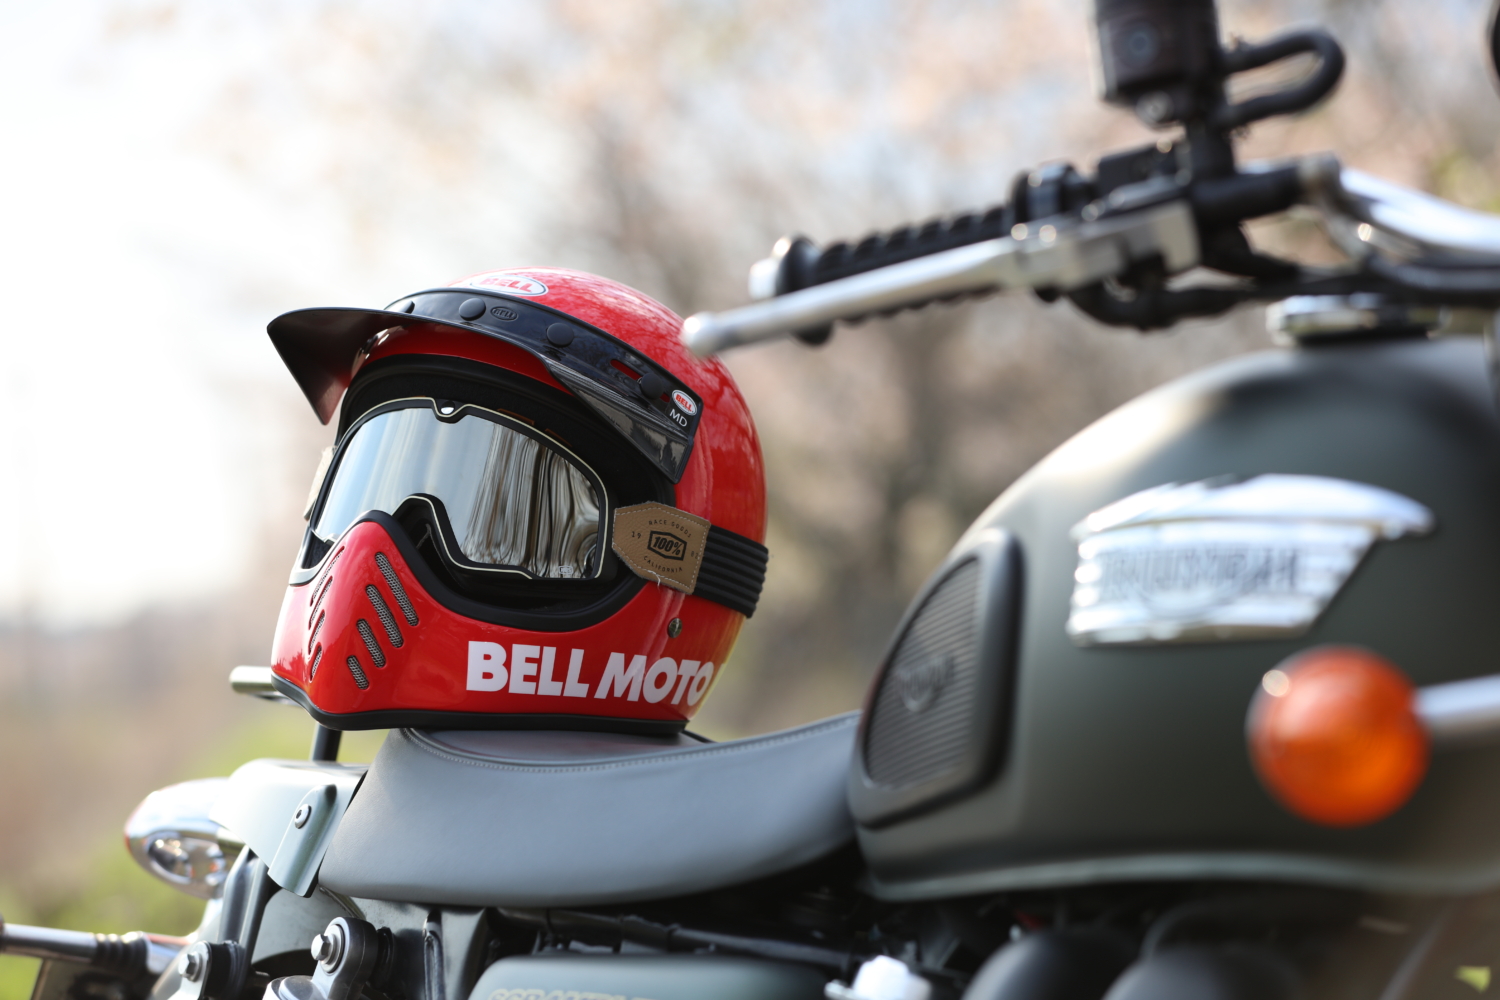 Bell moto3 モト3 ヘルメット/シールド オートバイアクセサリー 自動車